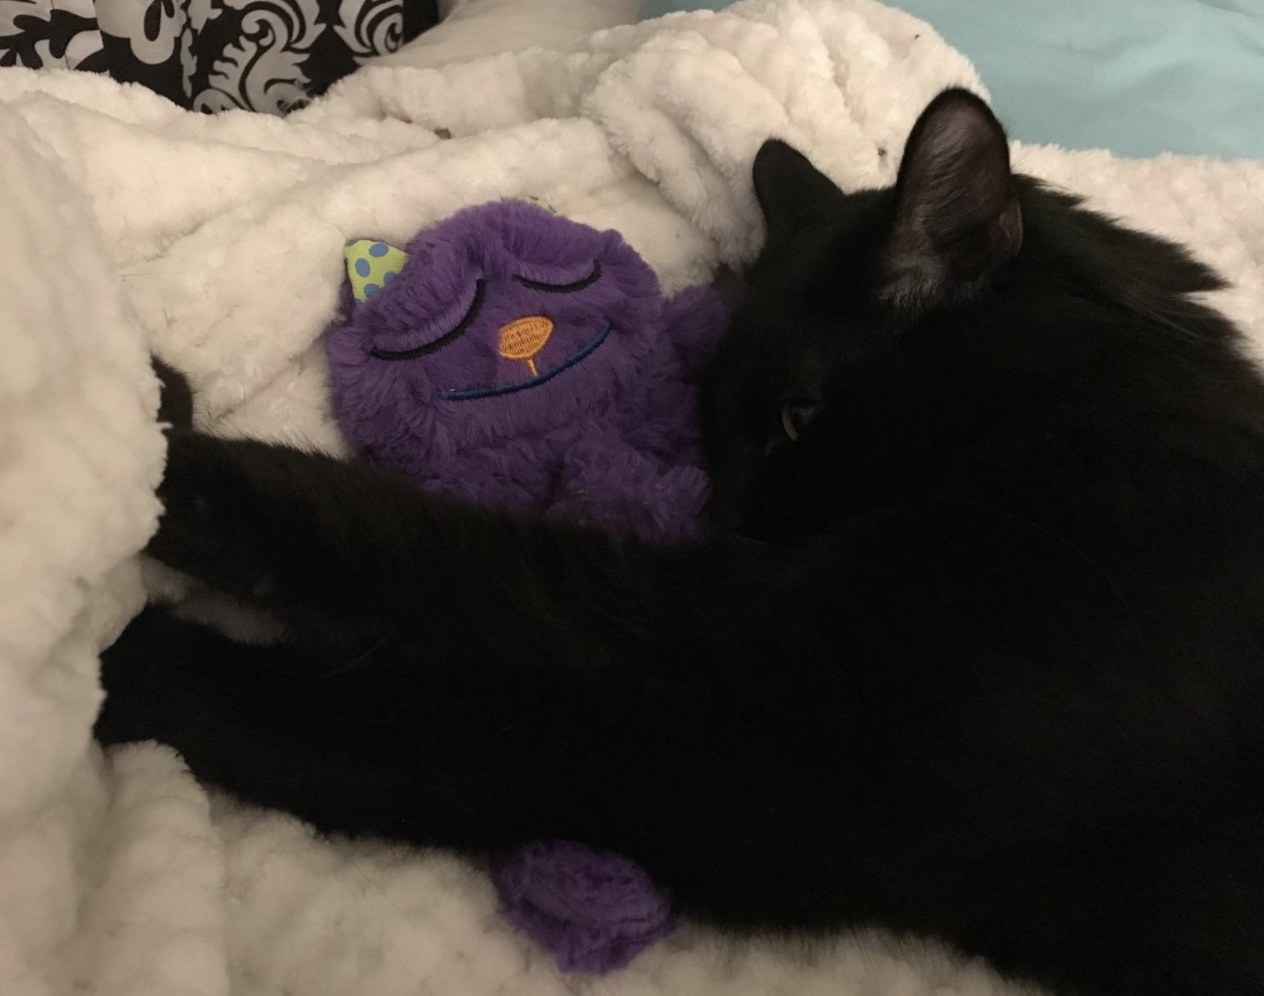 A cat cuddling a toy